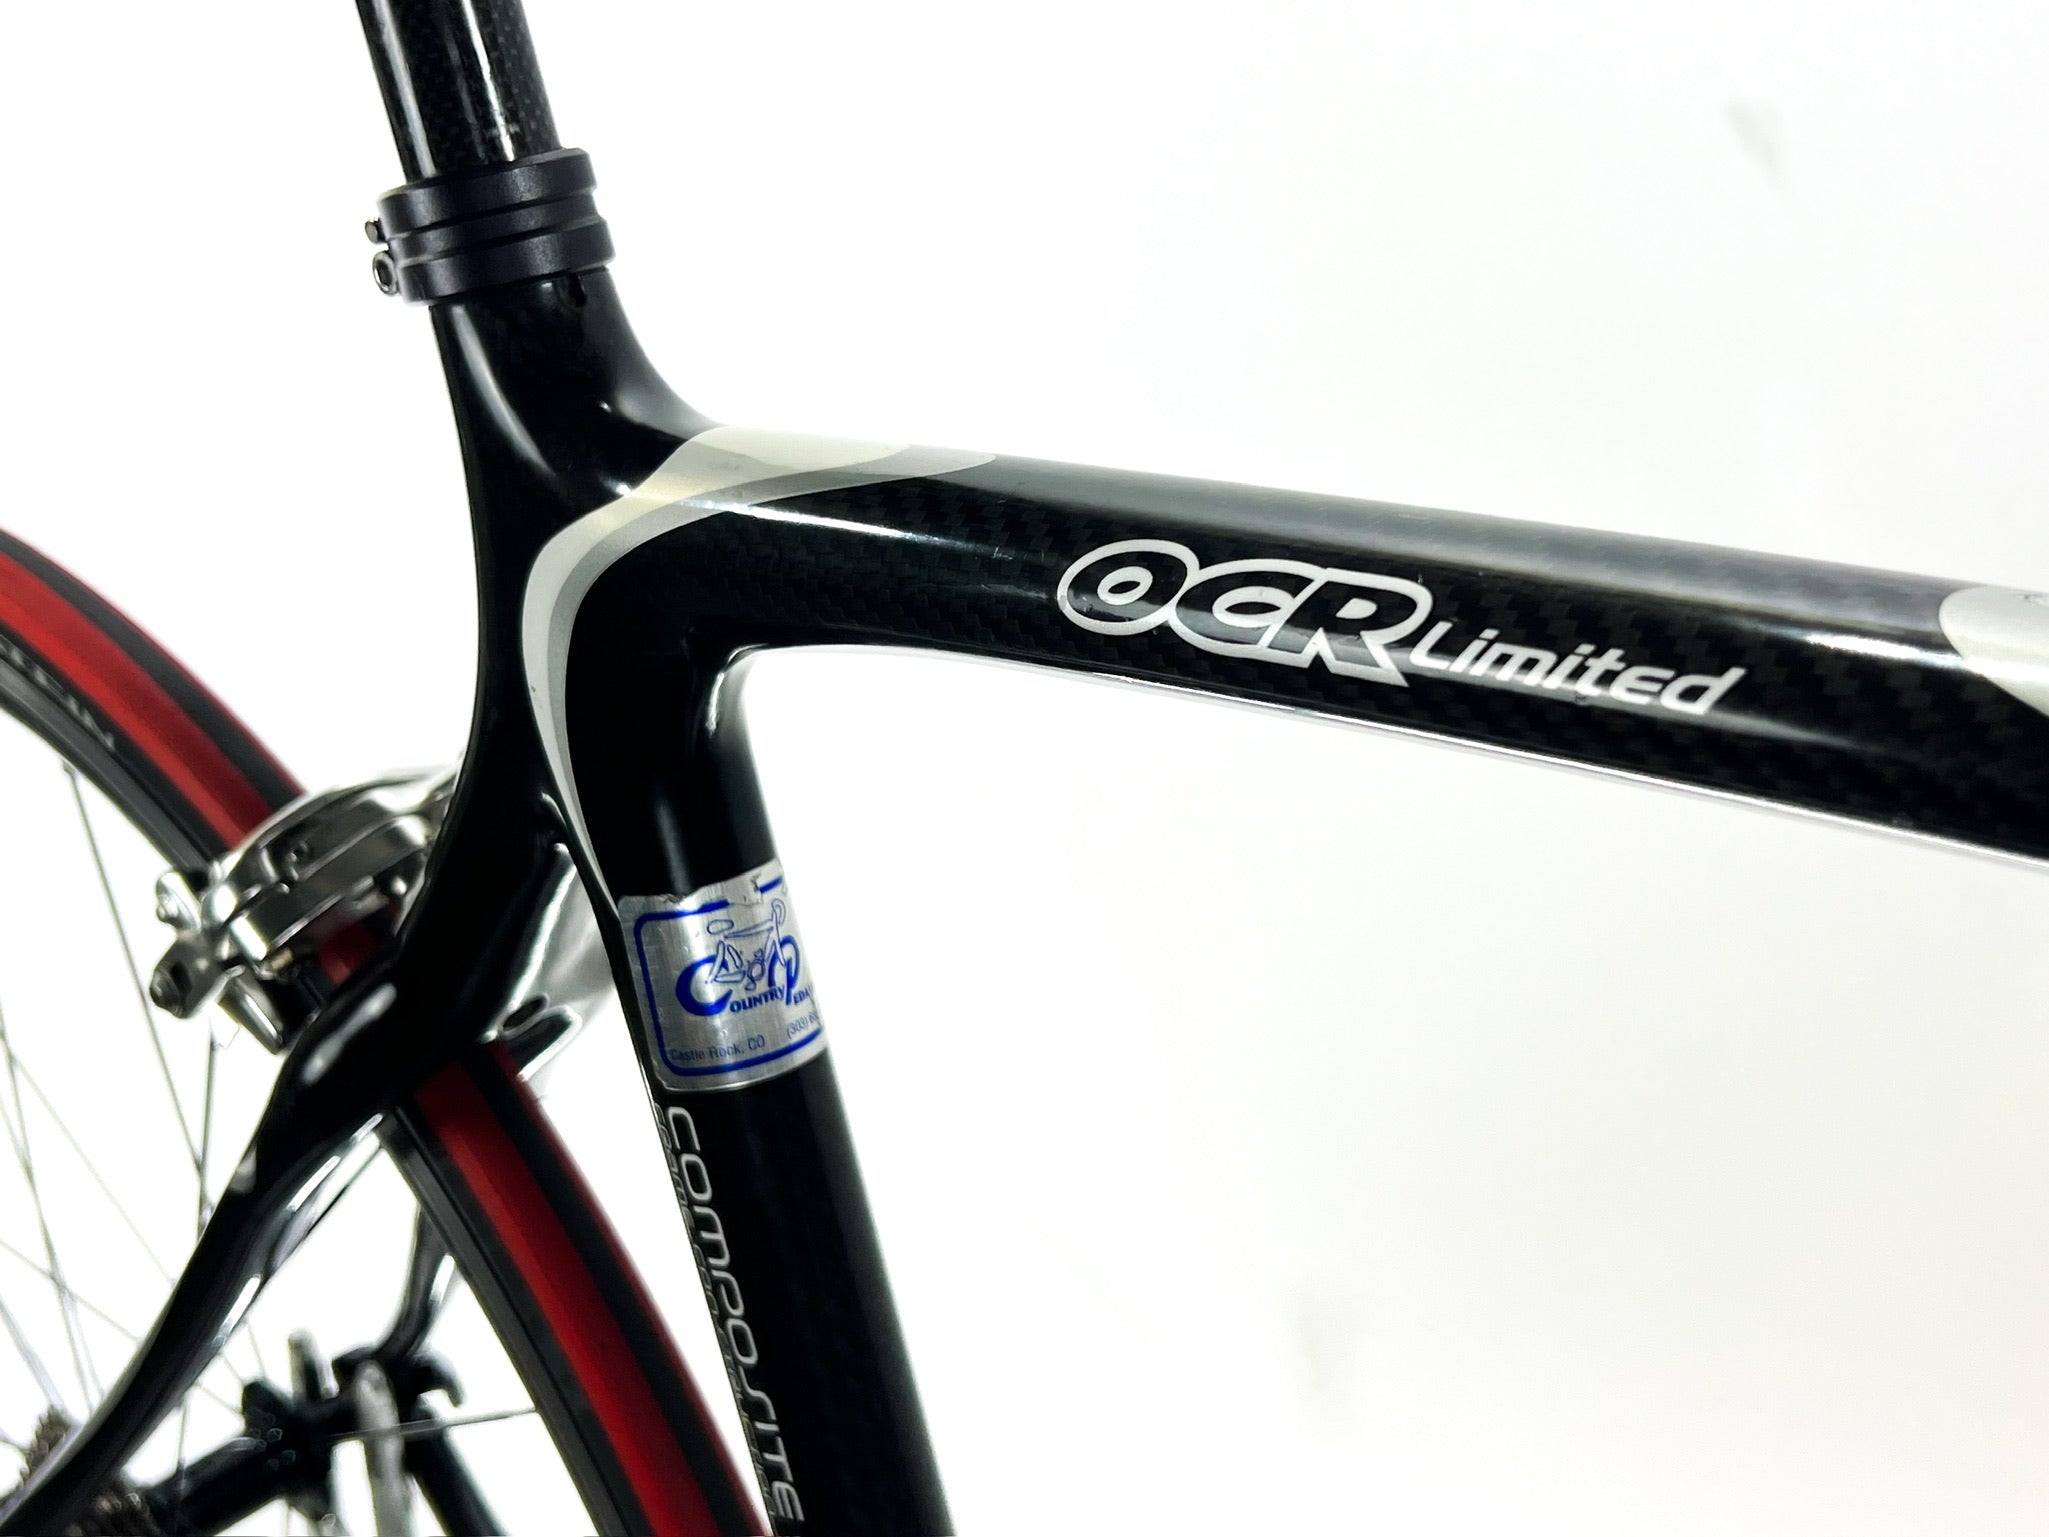 Giant OCR Limited, Carbon Fiber Road Bike, Shimano Ultegra/105 